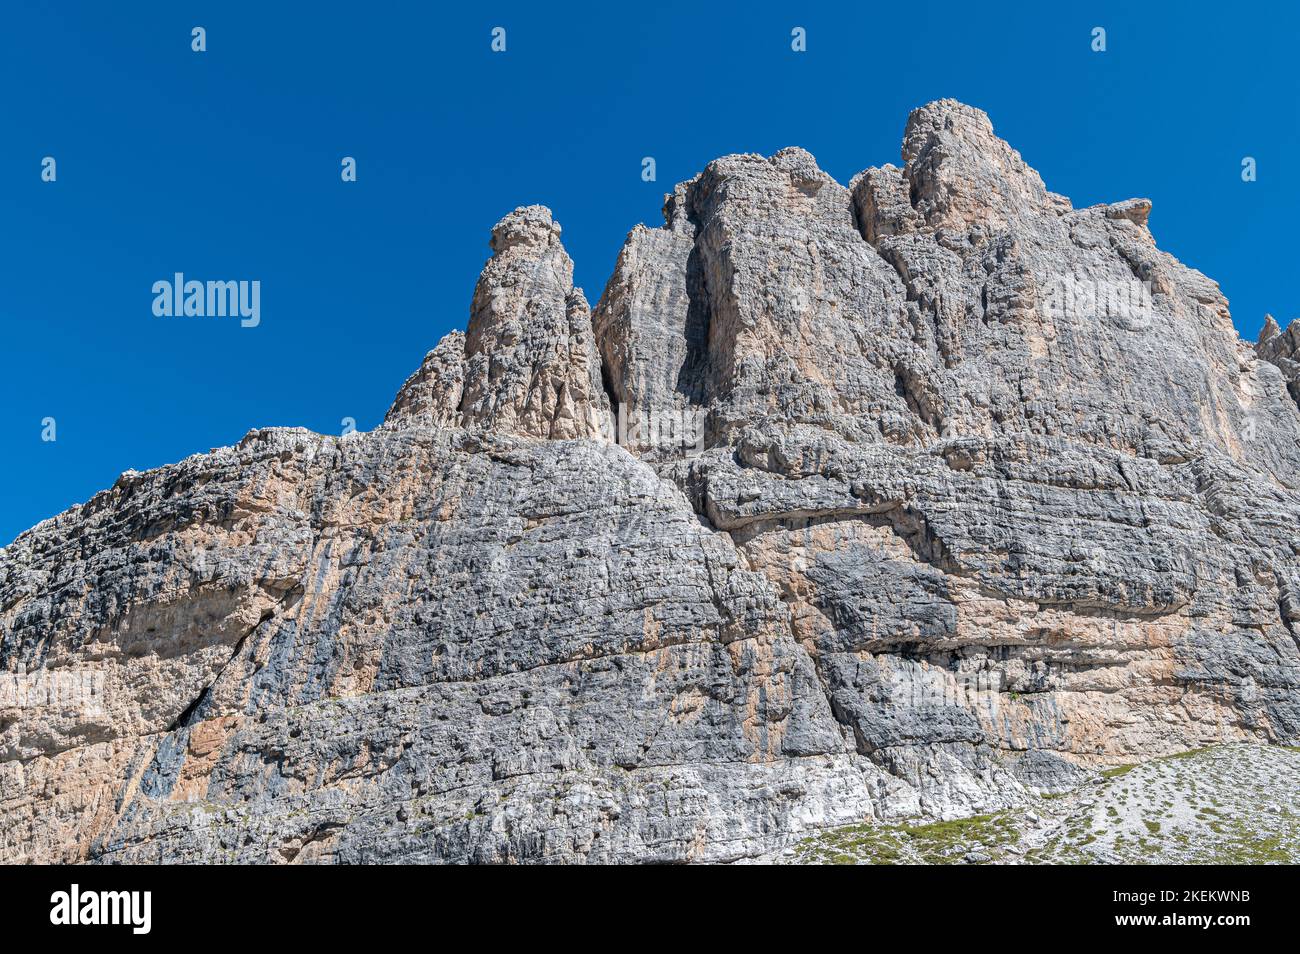 Paysage de montagne en été dans les Dolomites de l'Ouest (Dolomiti di Brenta) - Vallesinella - Madonna di Campiglio, Trentin-Haut-Adige, nord de l'Italie. Banque D'Images